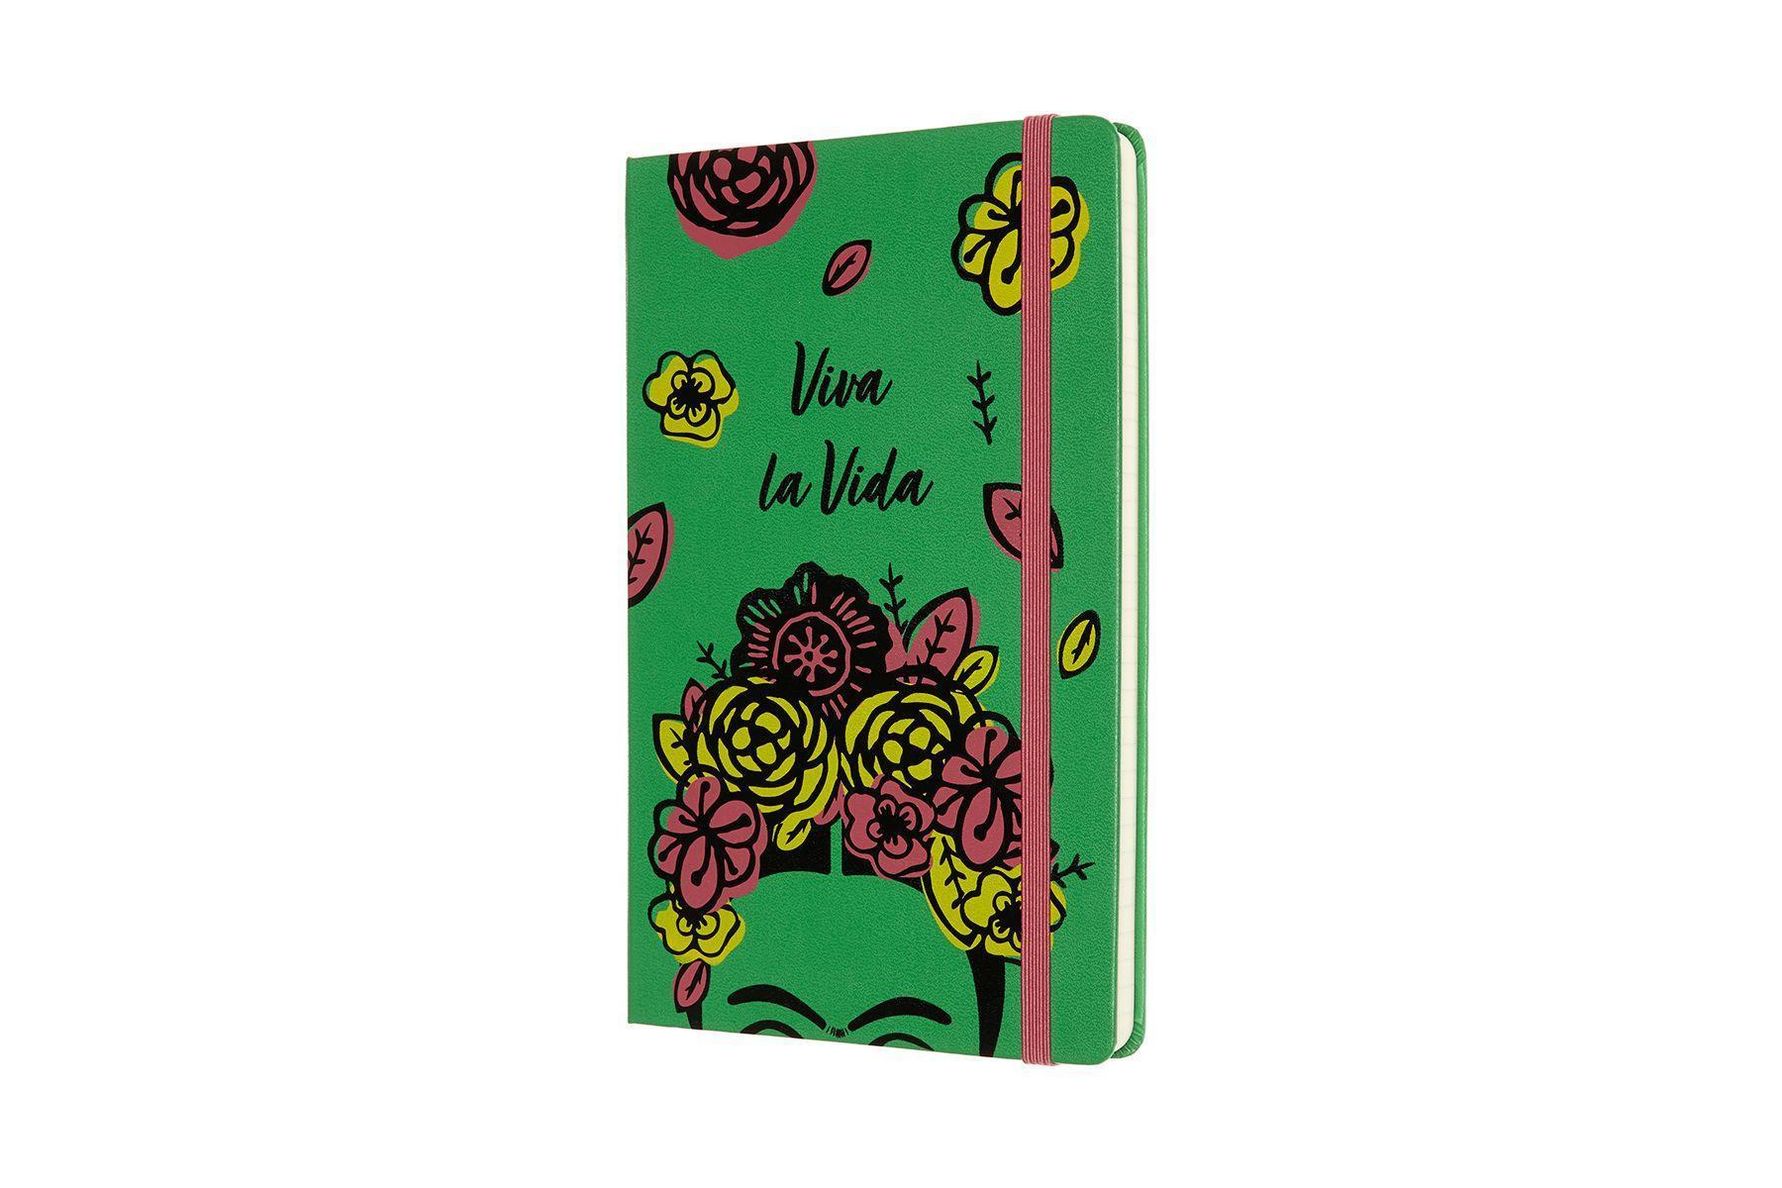 Moleskine Notizbuch - Frida Kahlo, Large A5, Liniert, Grün Buch  versandkostenfrei bei Weltbild.de bestellen